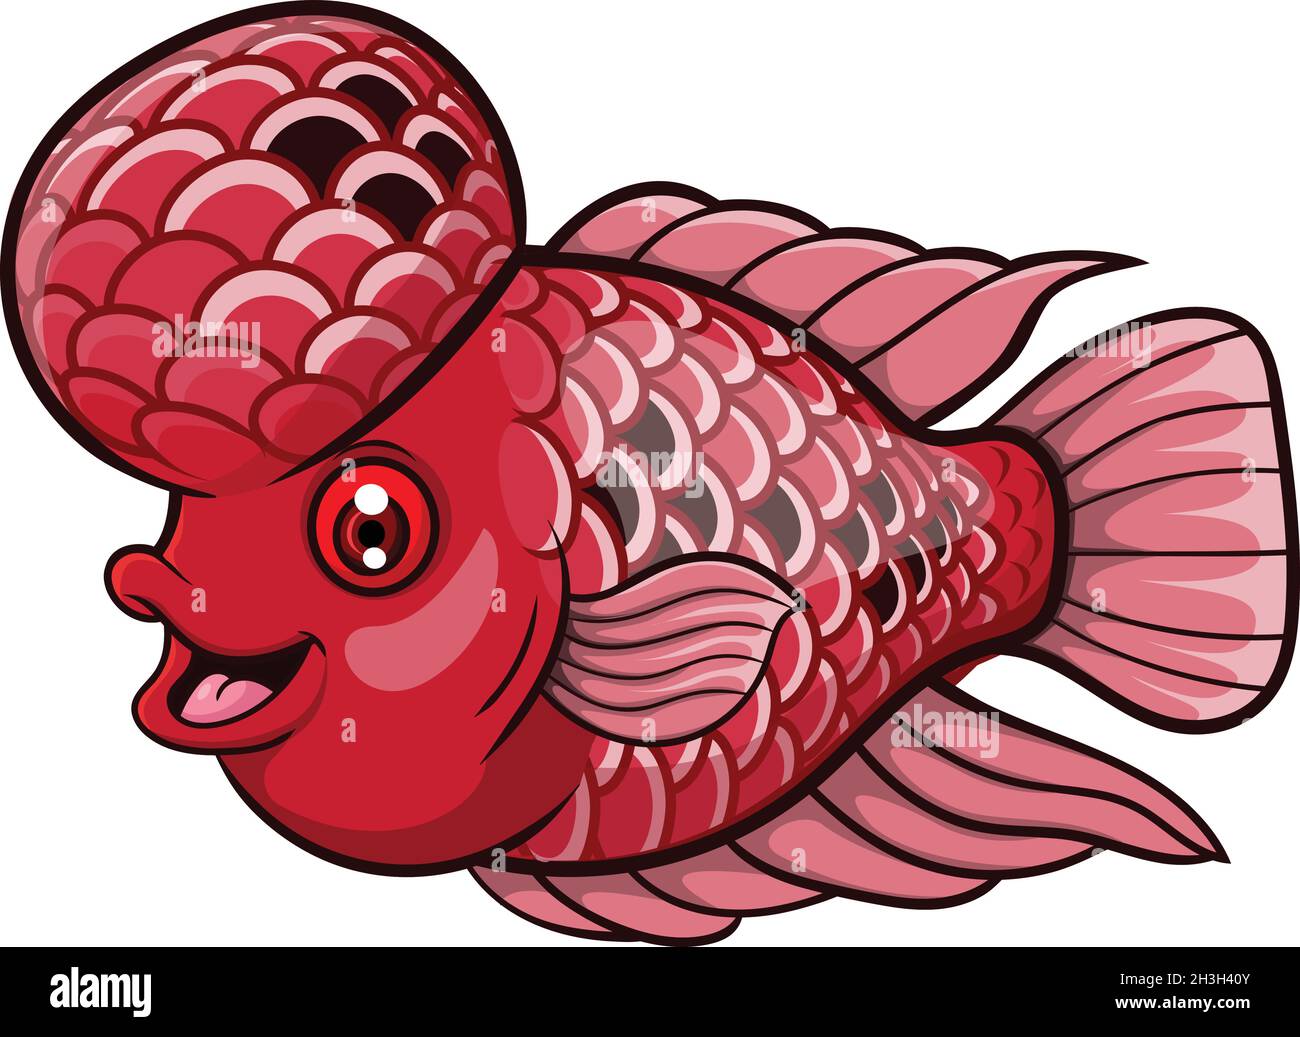 Dessin animé flowerhorn poisson sur fond blanc Illustration de Vecteur